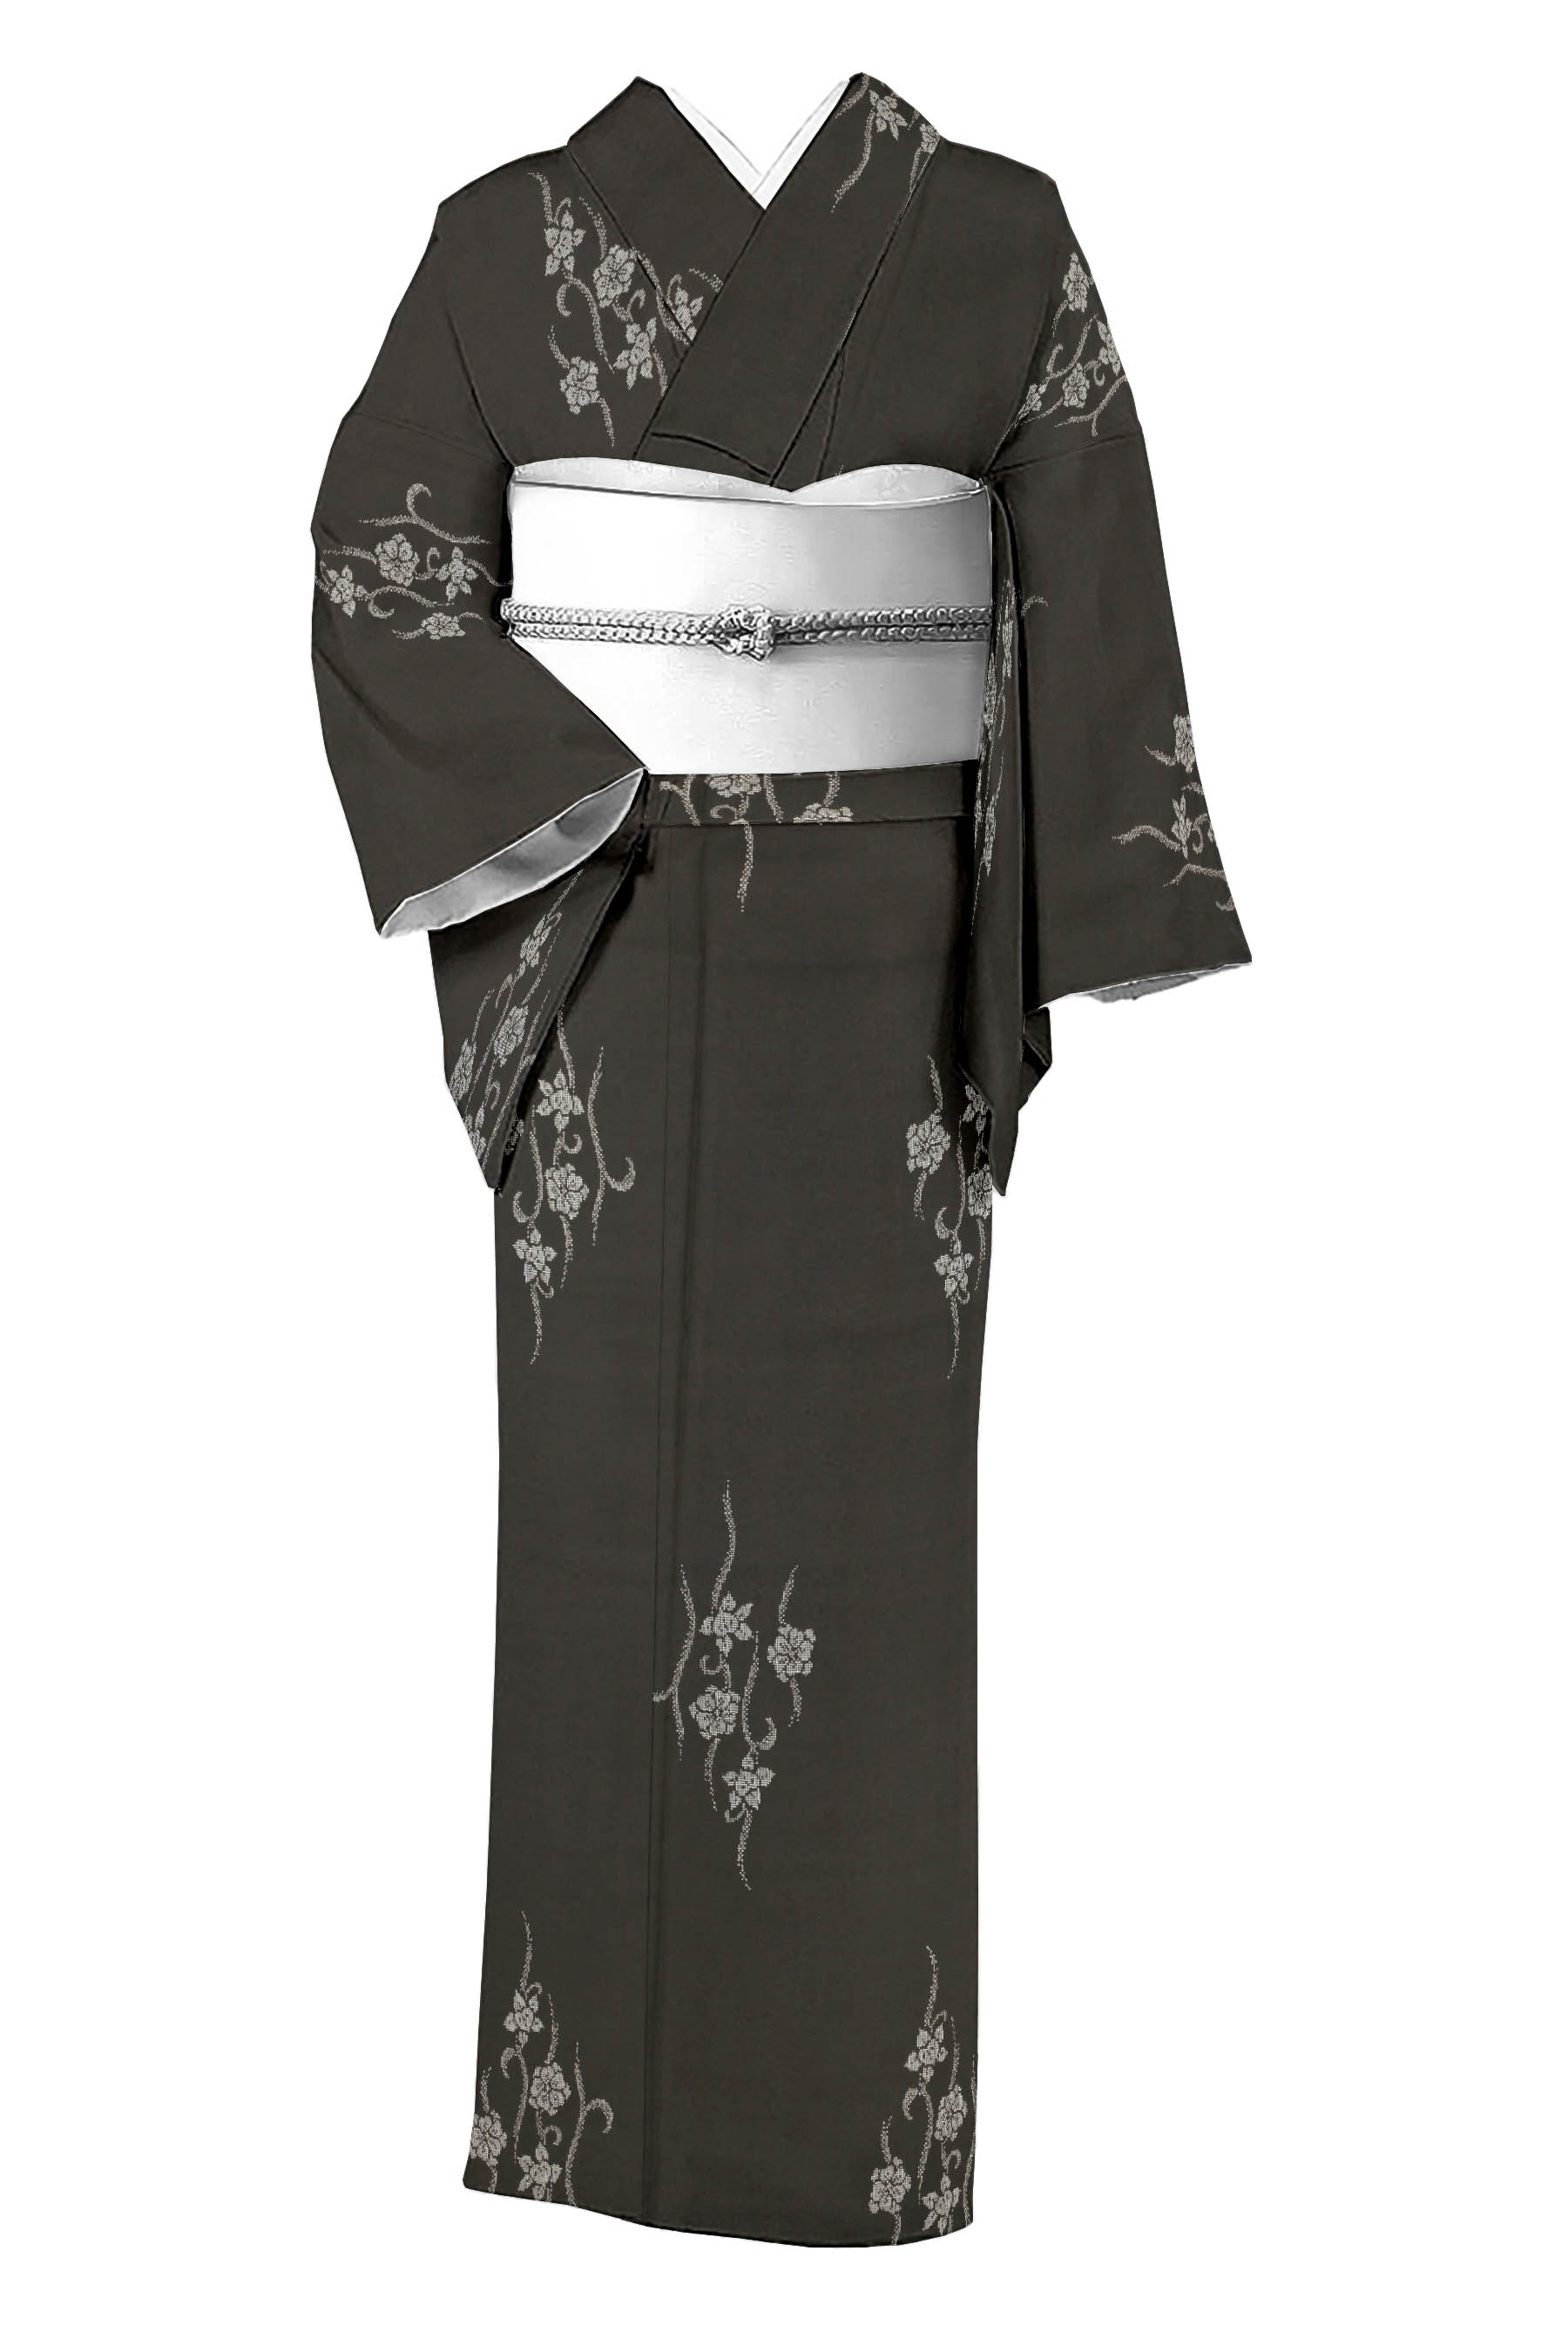 カタス式 大島紬 お着物と帯(証紙付)のセット